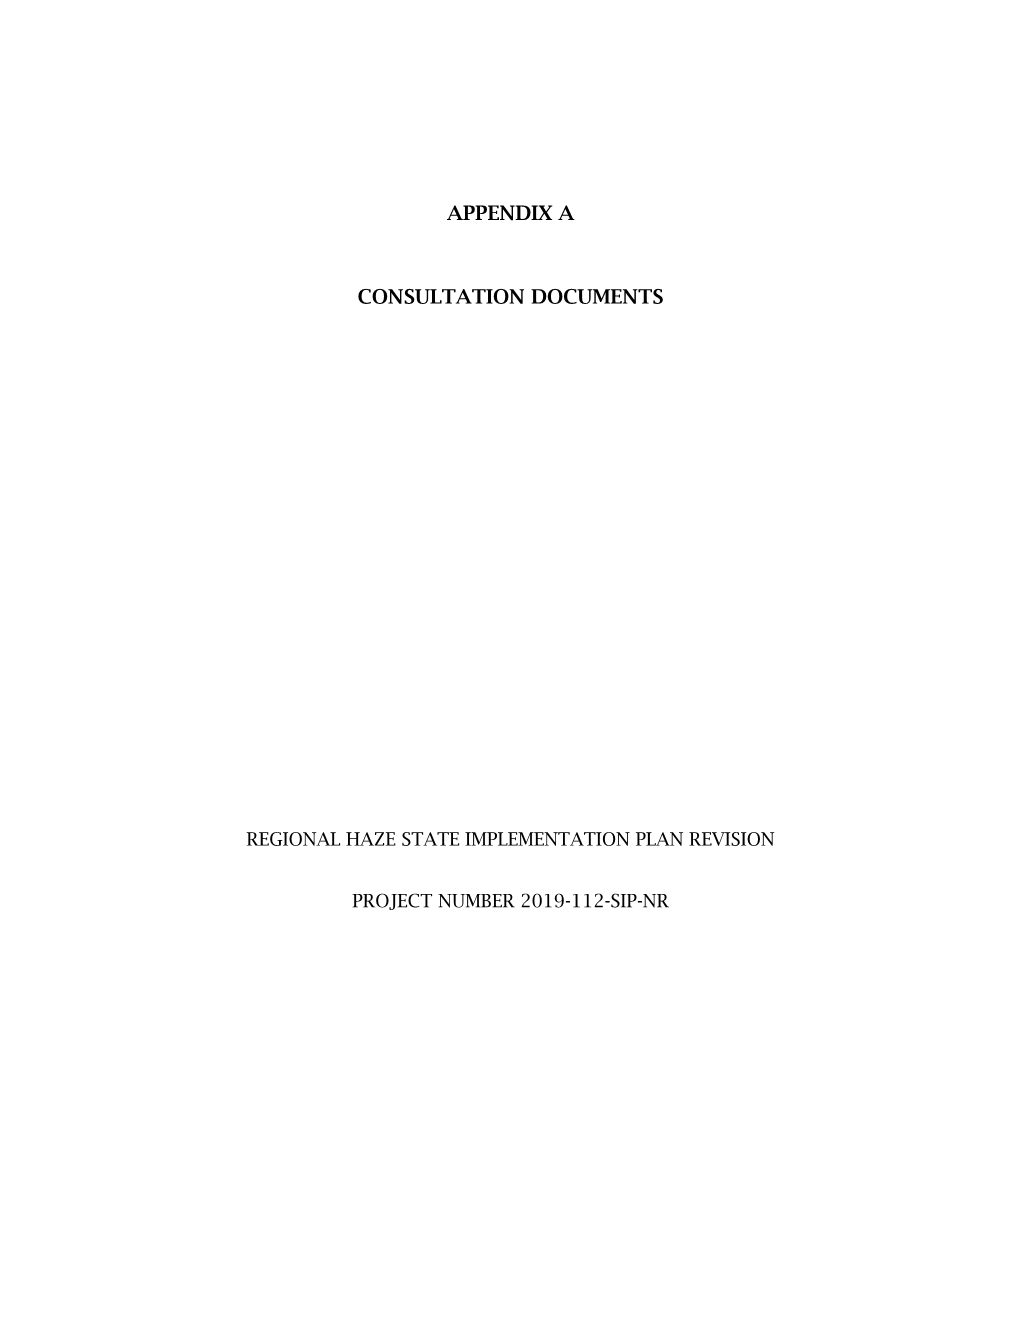 Appendix A: Consultation Documents